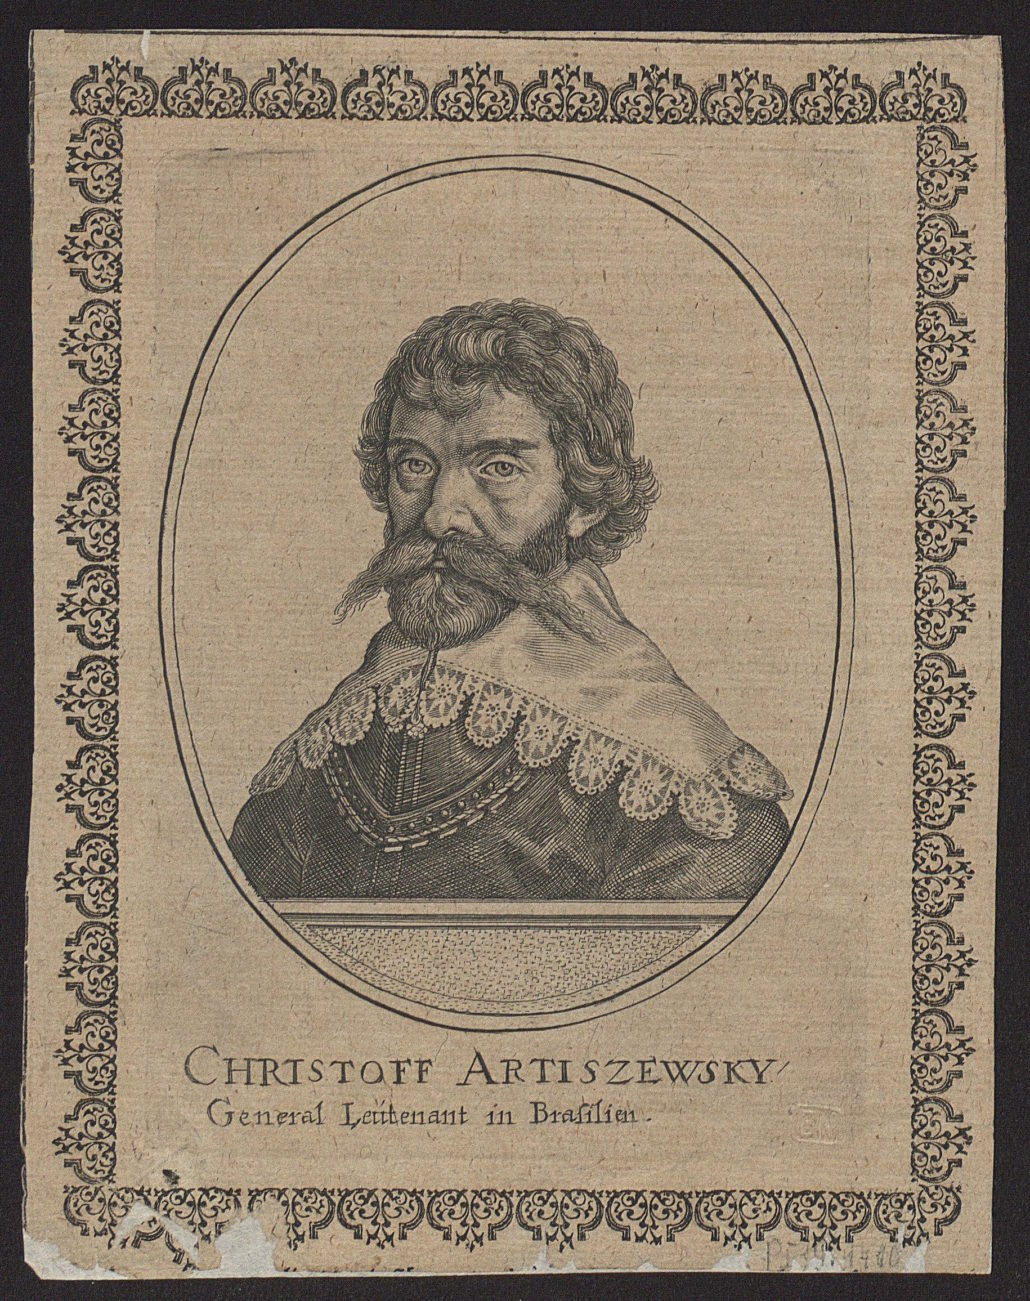 Krzysztof Arciszewski, generał lejtnant w Brazylii). Miedzioryt z 1639 roku. Źródło: Polona